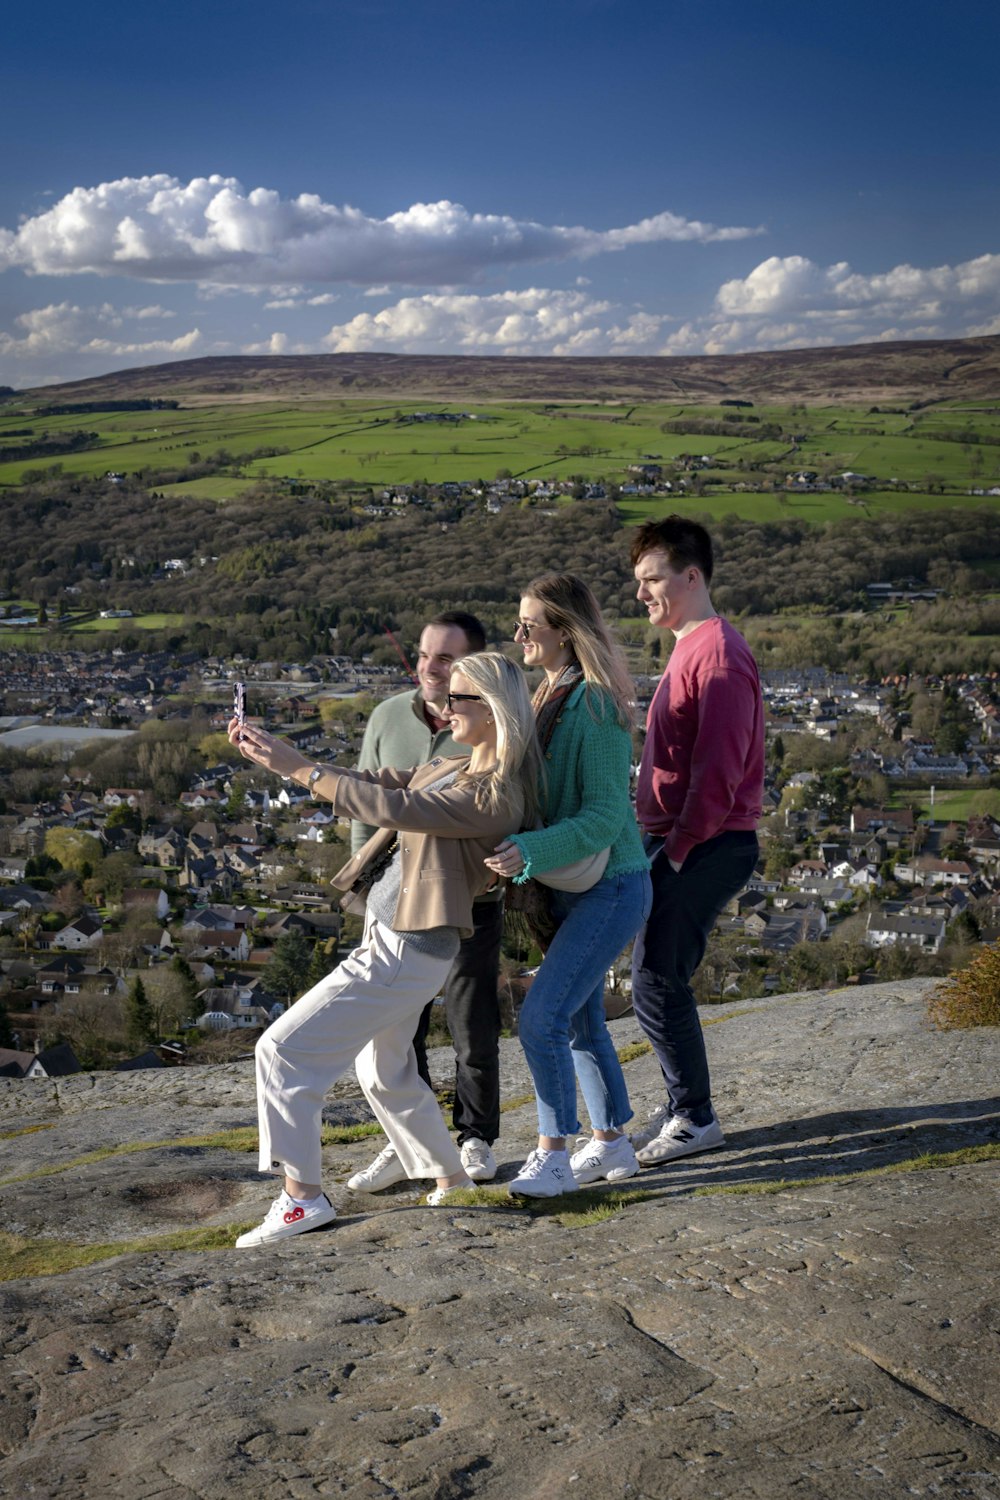 Un grupo de personas de pie en la cima de una colina